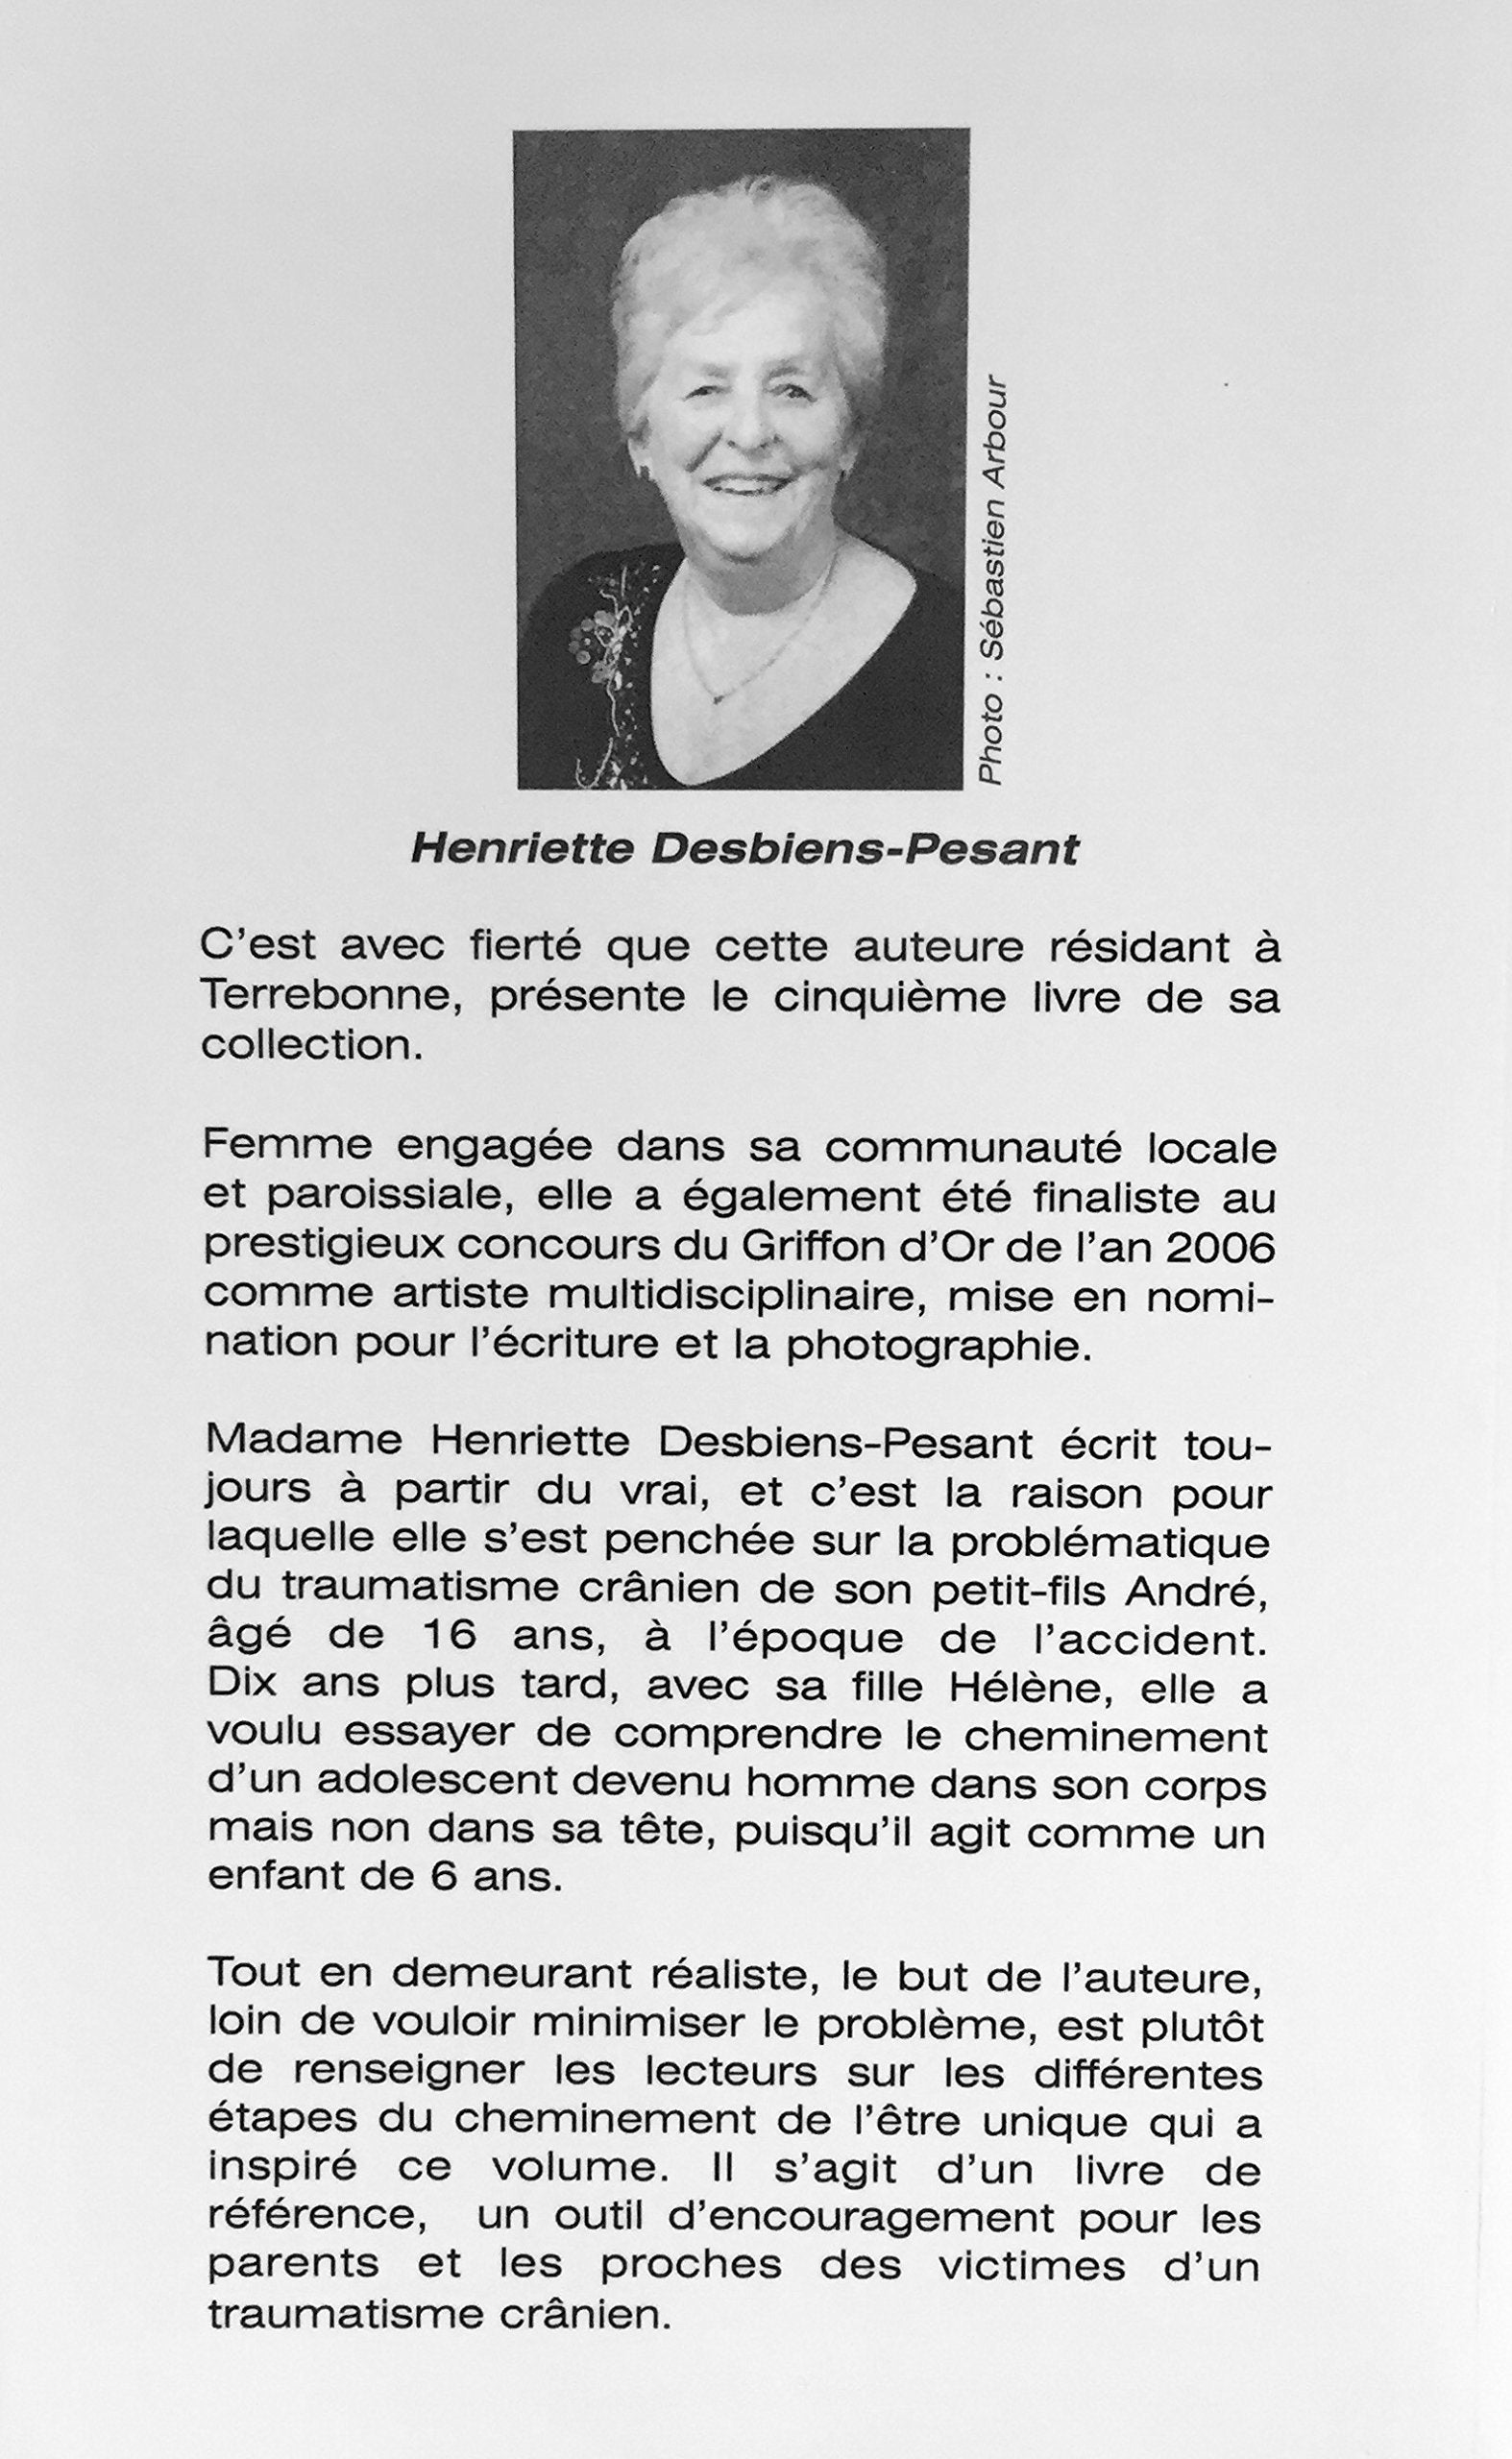 André, traumatisé crânien, 10 ans plus tard... (Henriette Desbiens-Pesant)